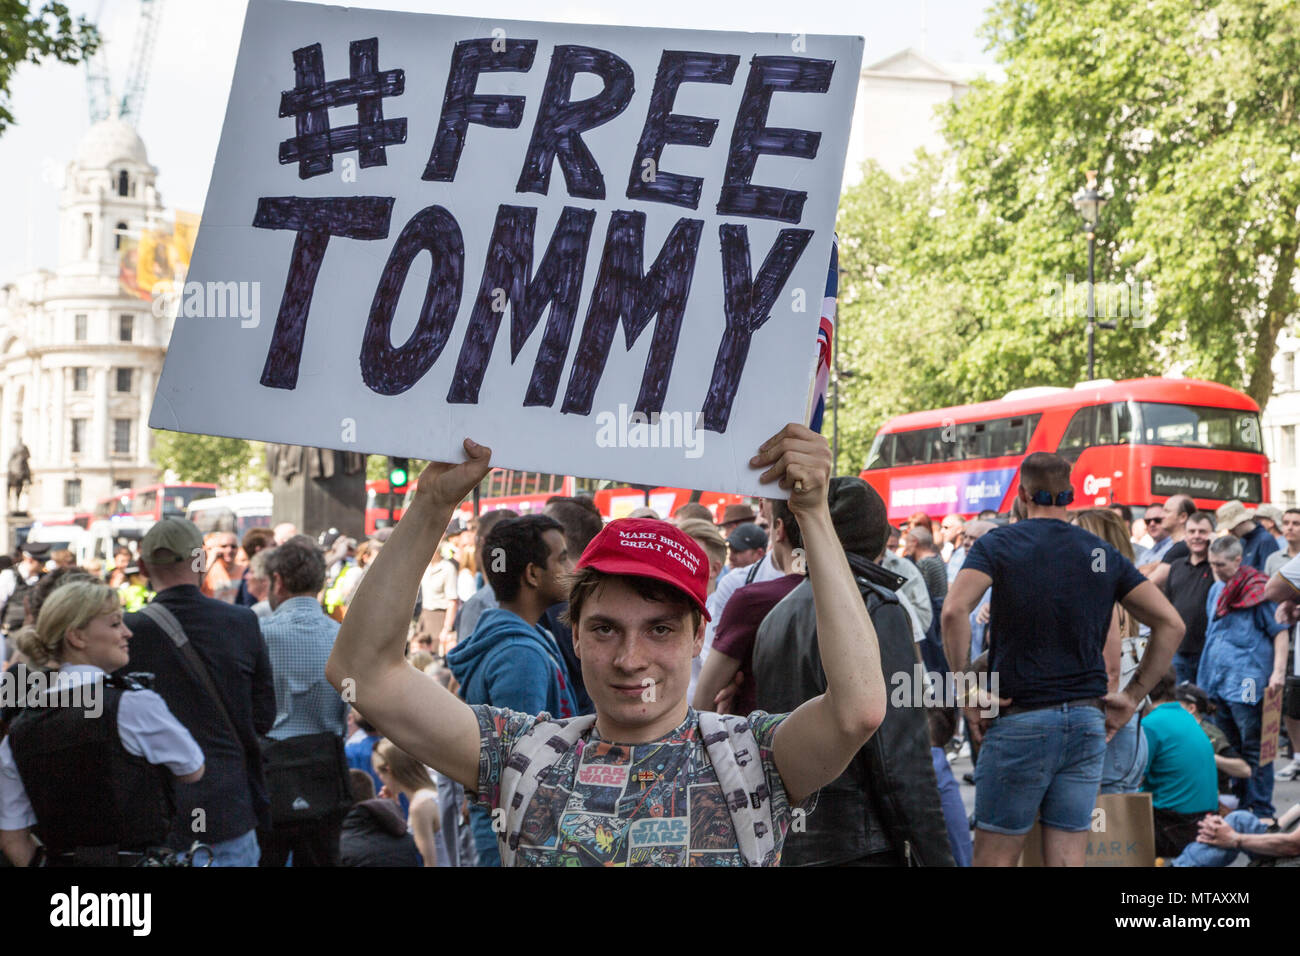 London UK 26 mai 2018 les partisans d'extrême droite manifestation devant Downing Street exigeant la libération de l'activiste de droite Tommy Robinson, qui a été arrêté pour b Banque D'Images